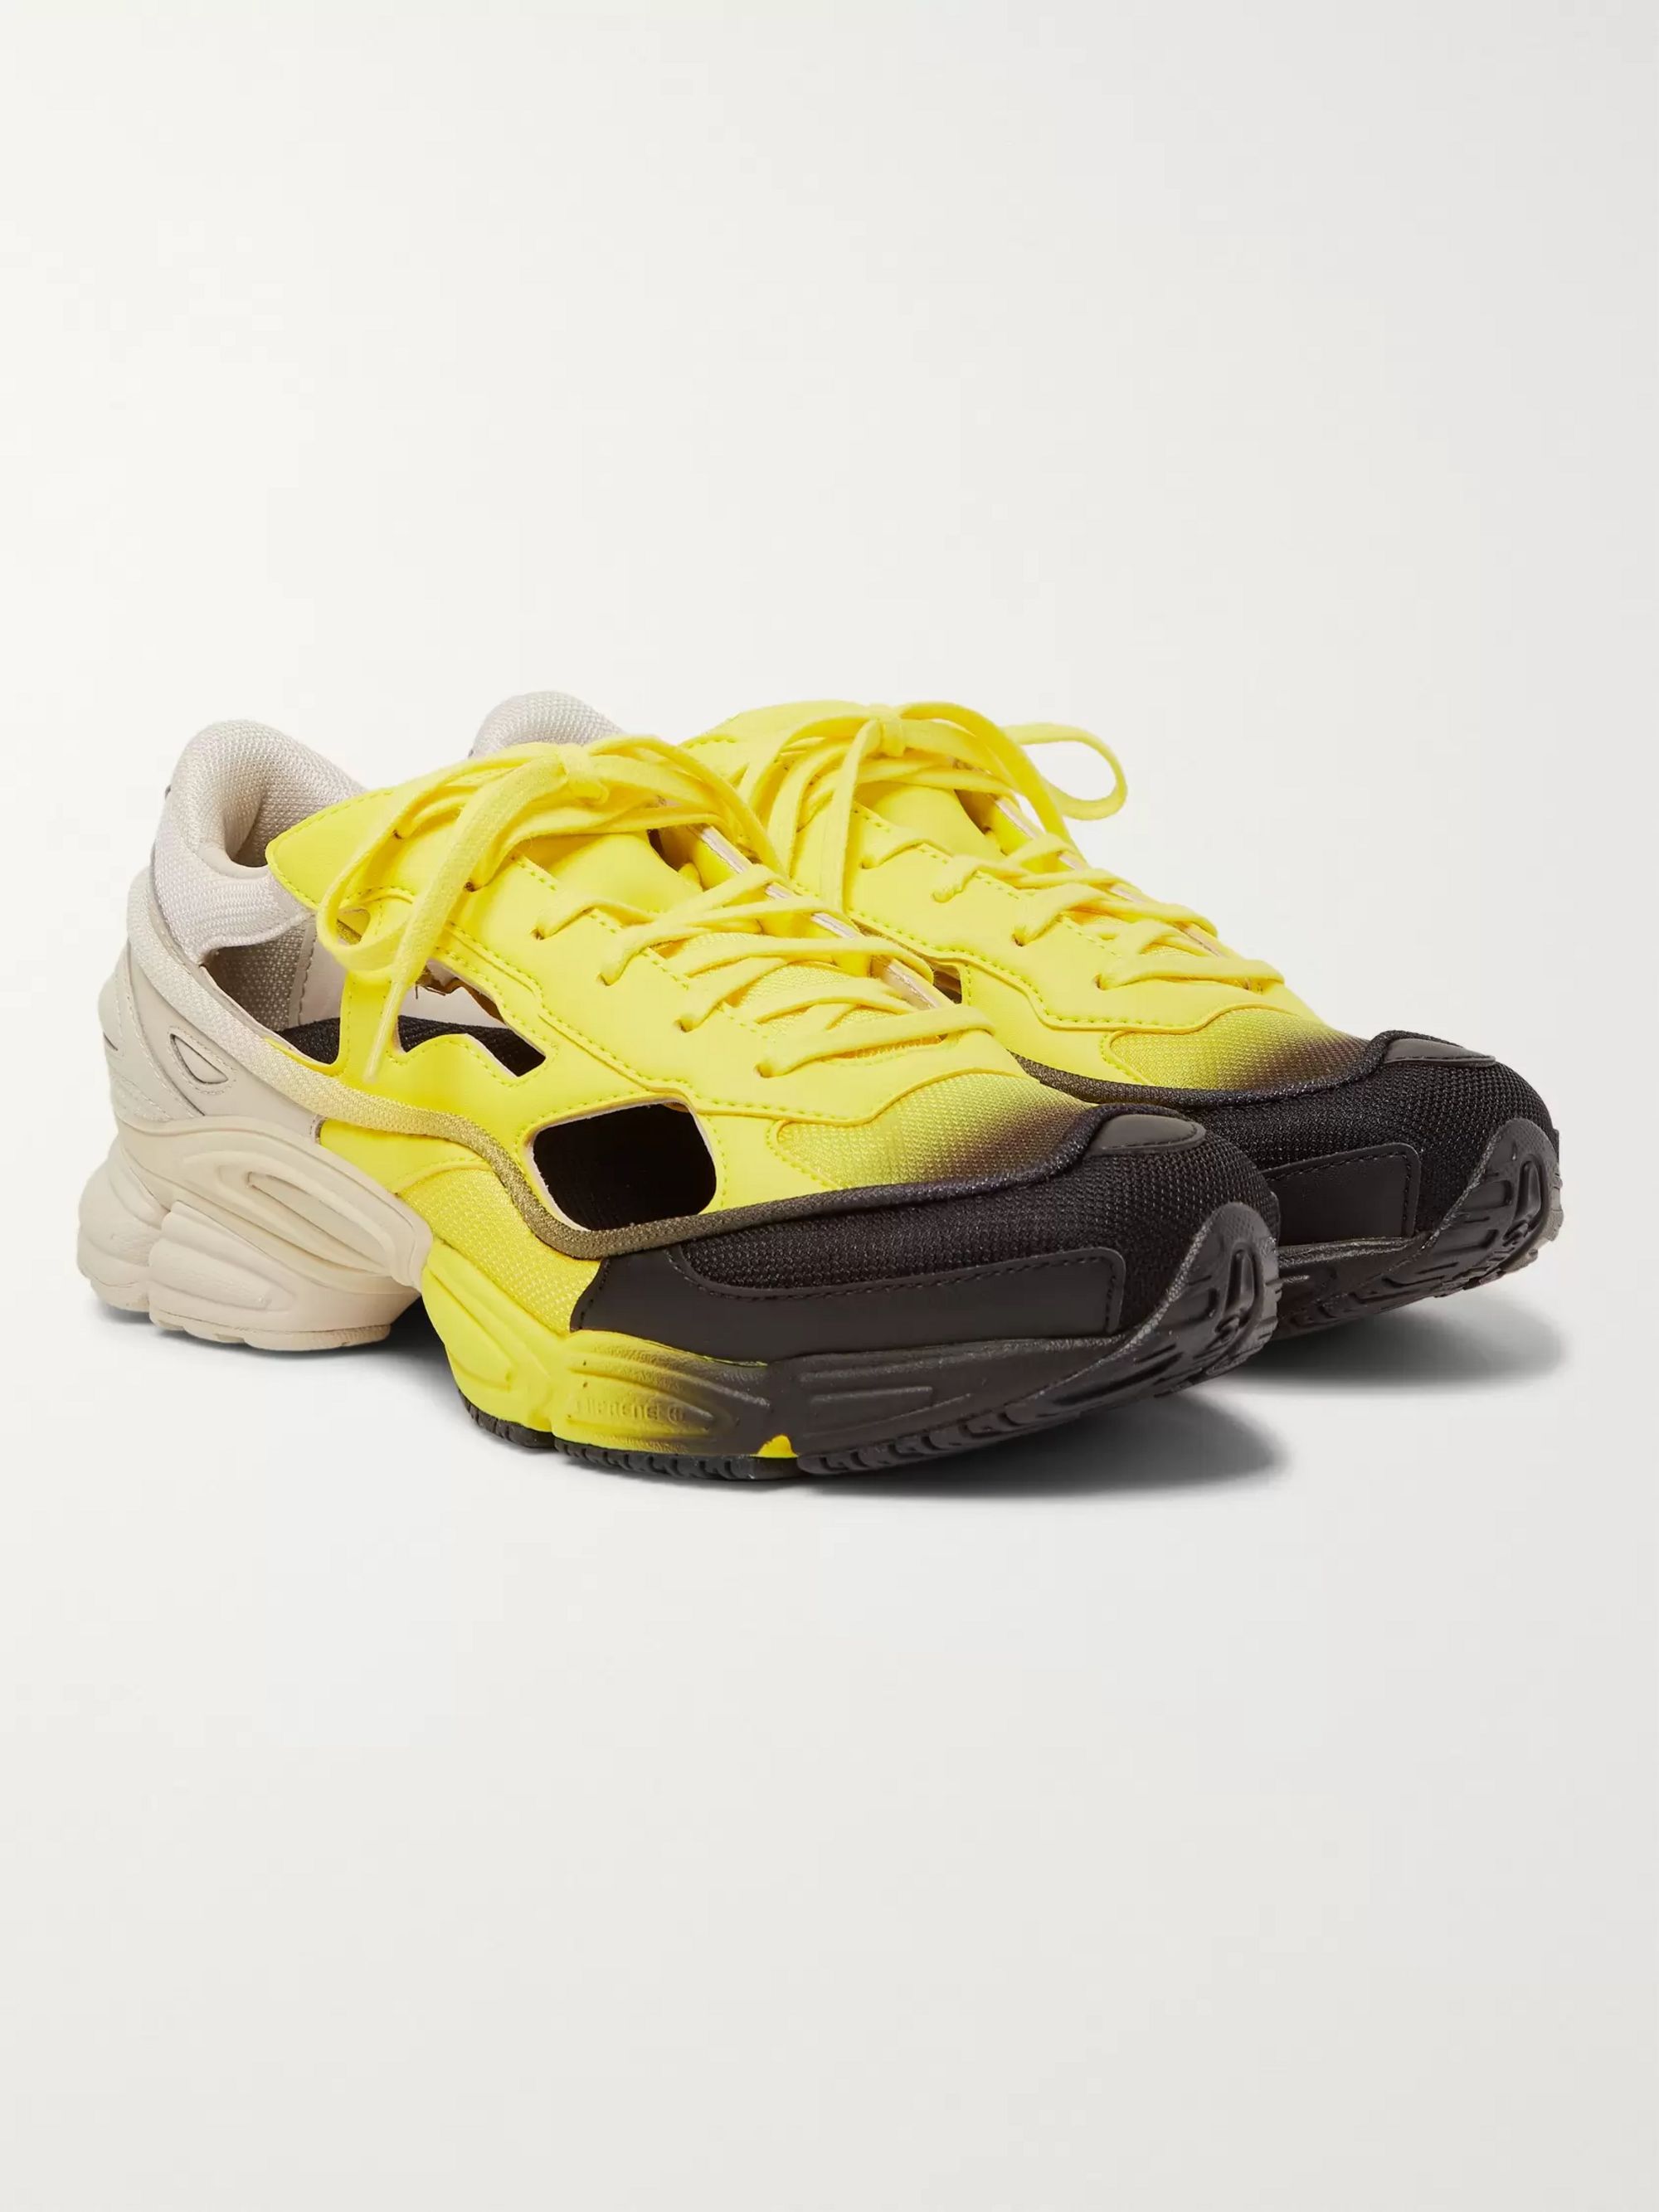 raf simons yellow shoes